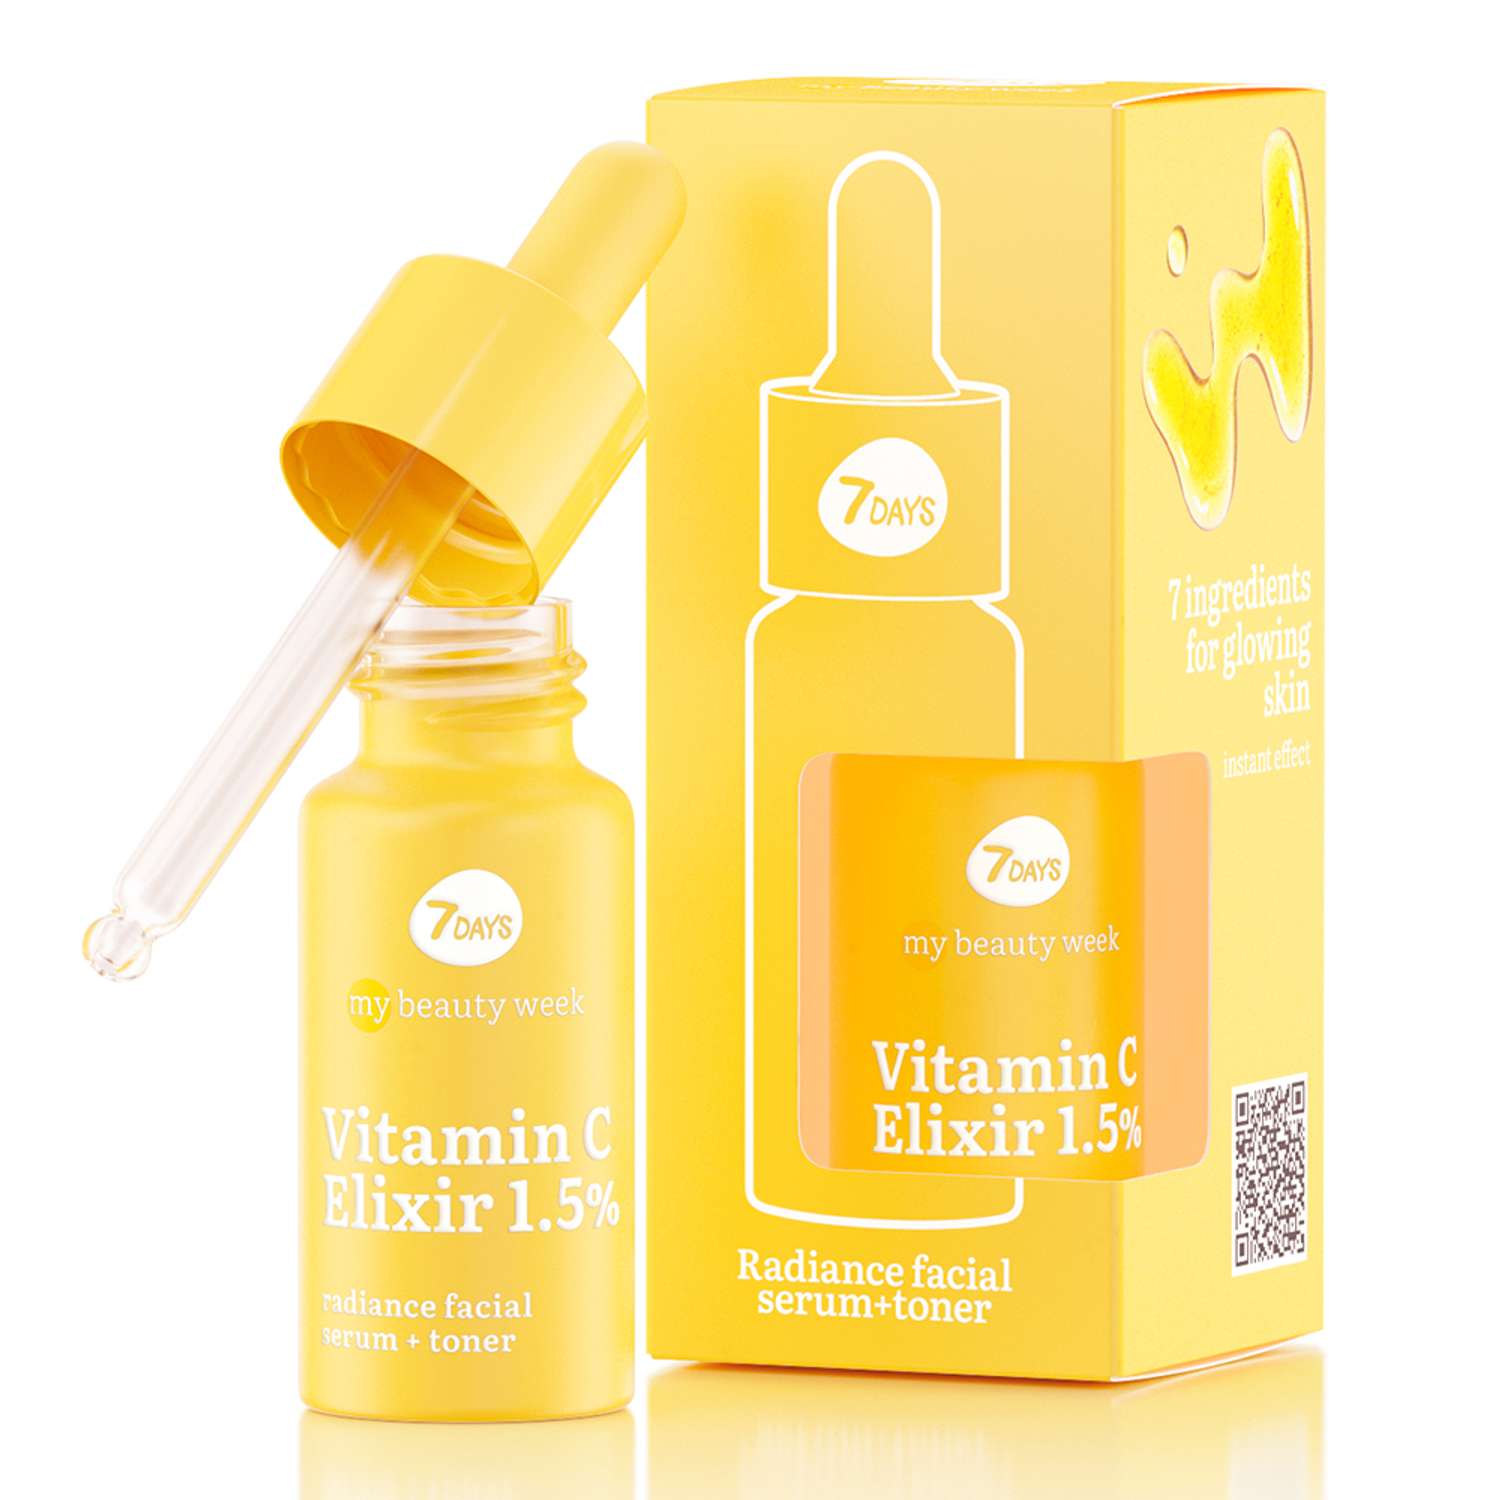 Сыворотка для лица 7DAYS Vitamin С elixir 1.5% придающая сияние коже - фото 2